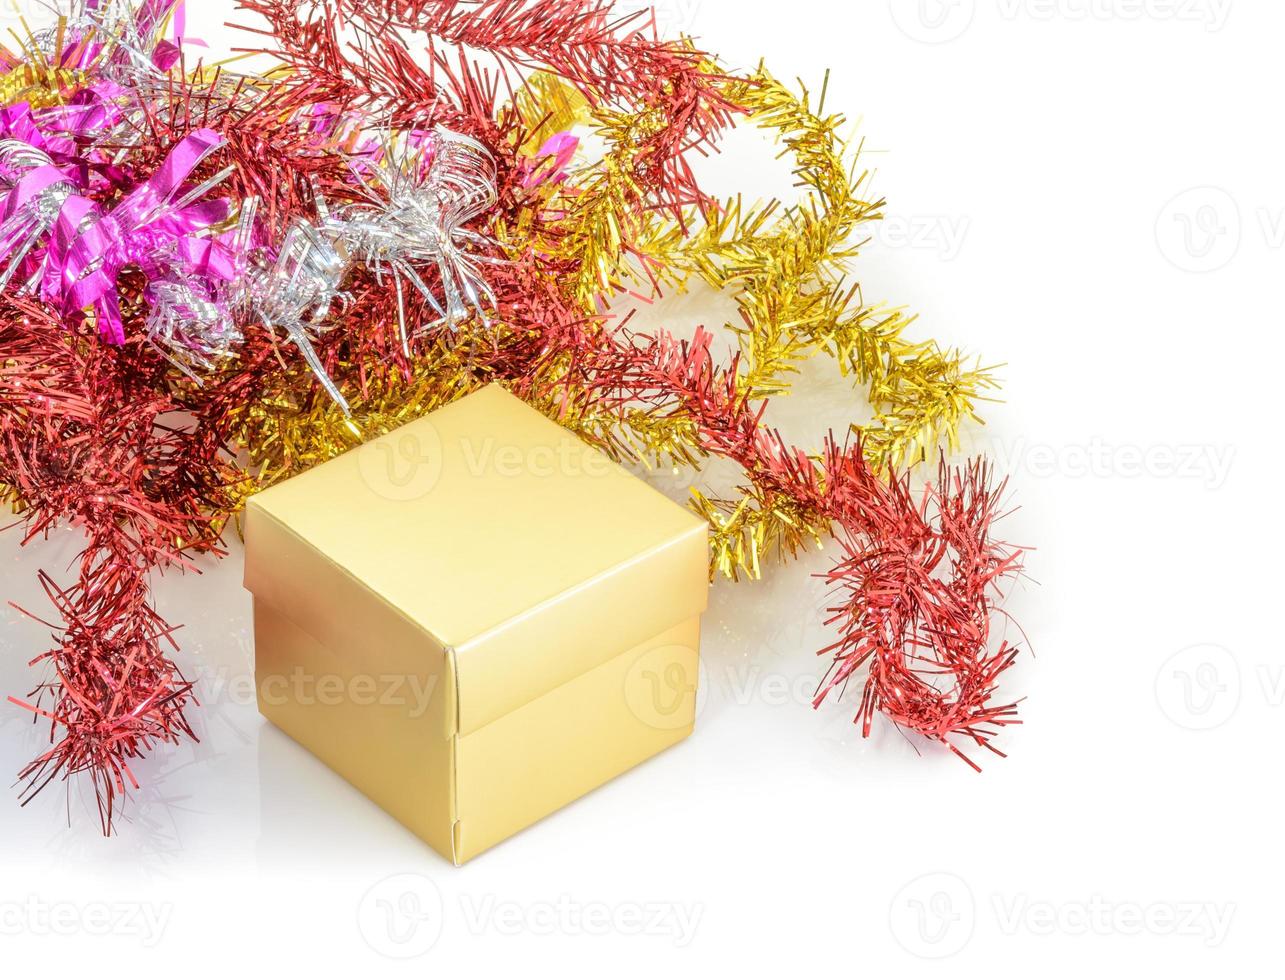 weihnachtsdekoration mit geschenkbox und tannenzweig foto